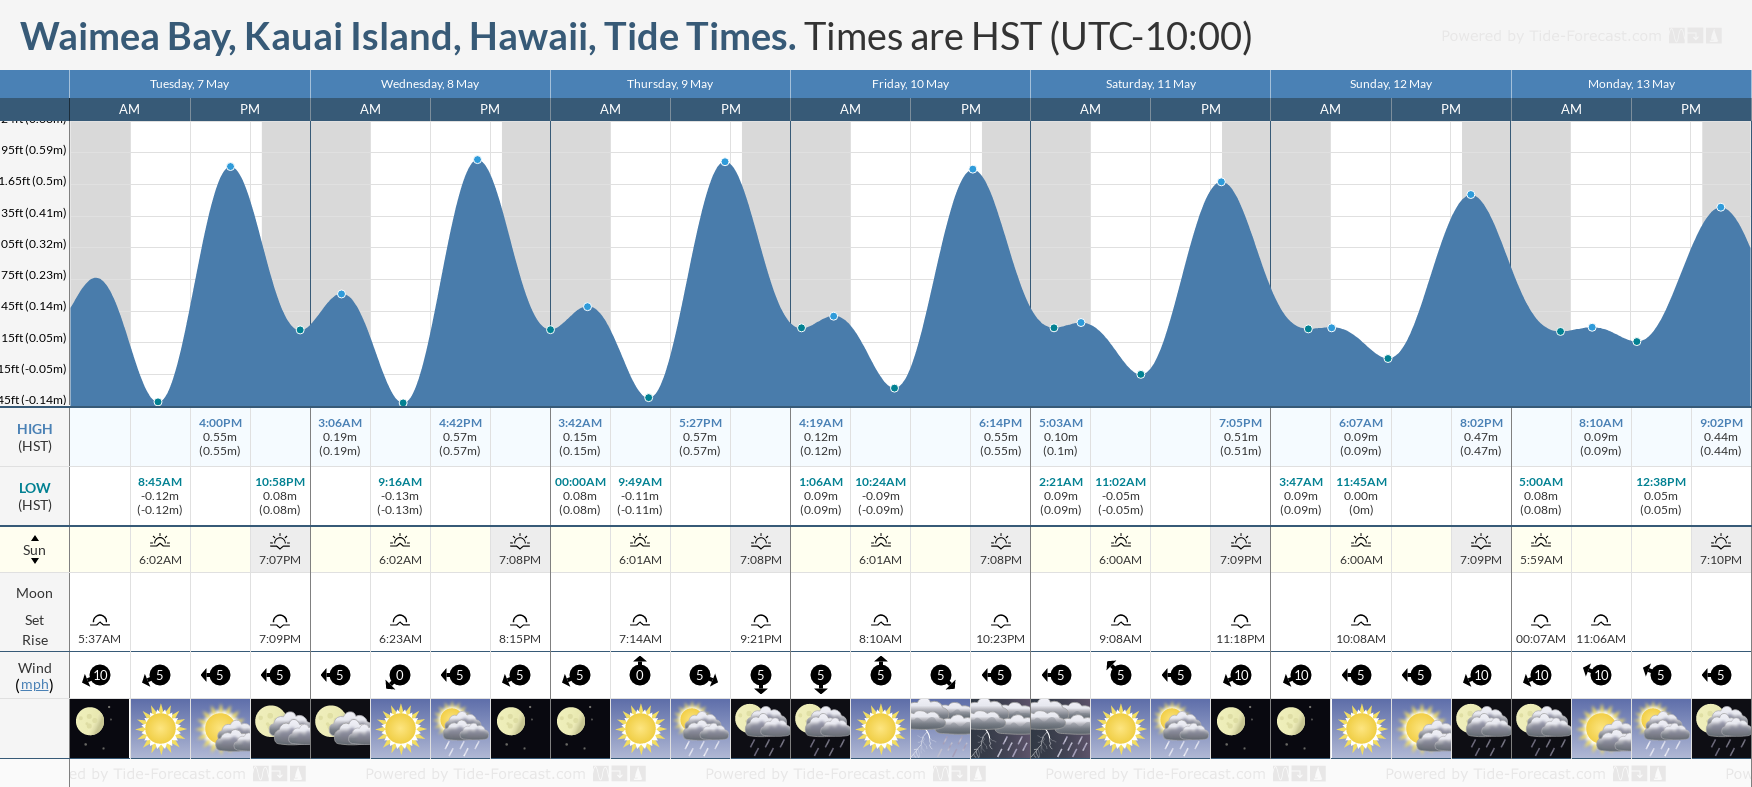 Waimea Bay, Kauai Island, Hawaii Tide Chart including high and low tide tide times for the next 7 days